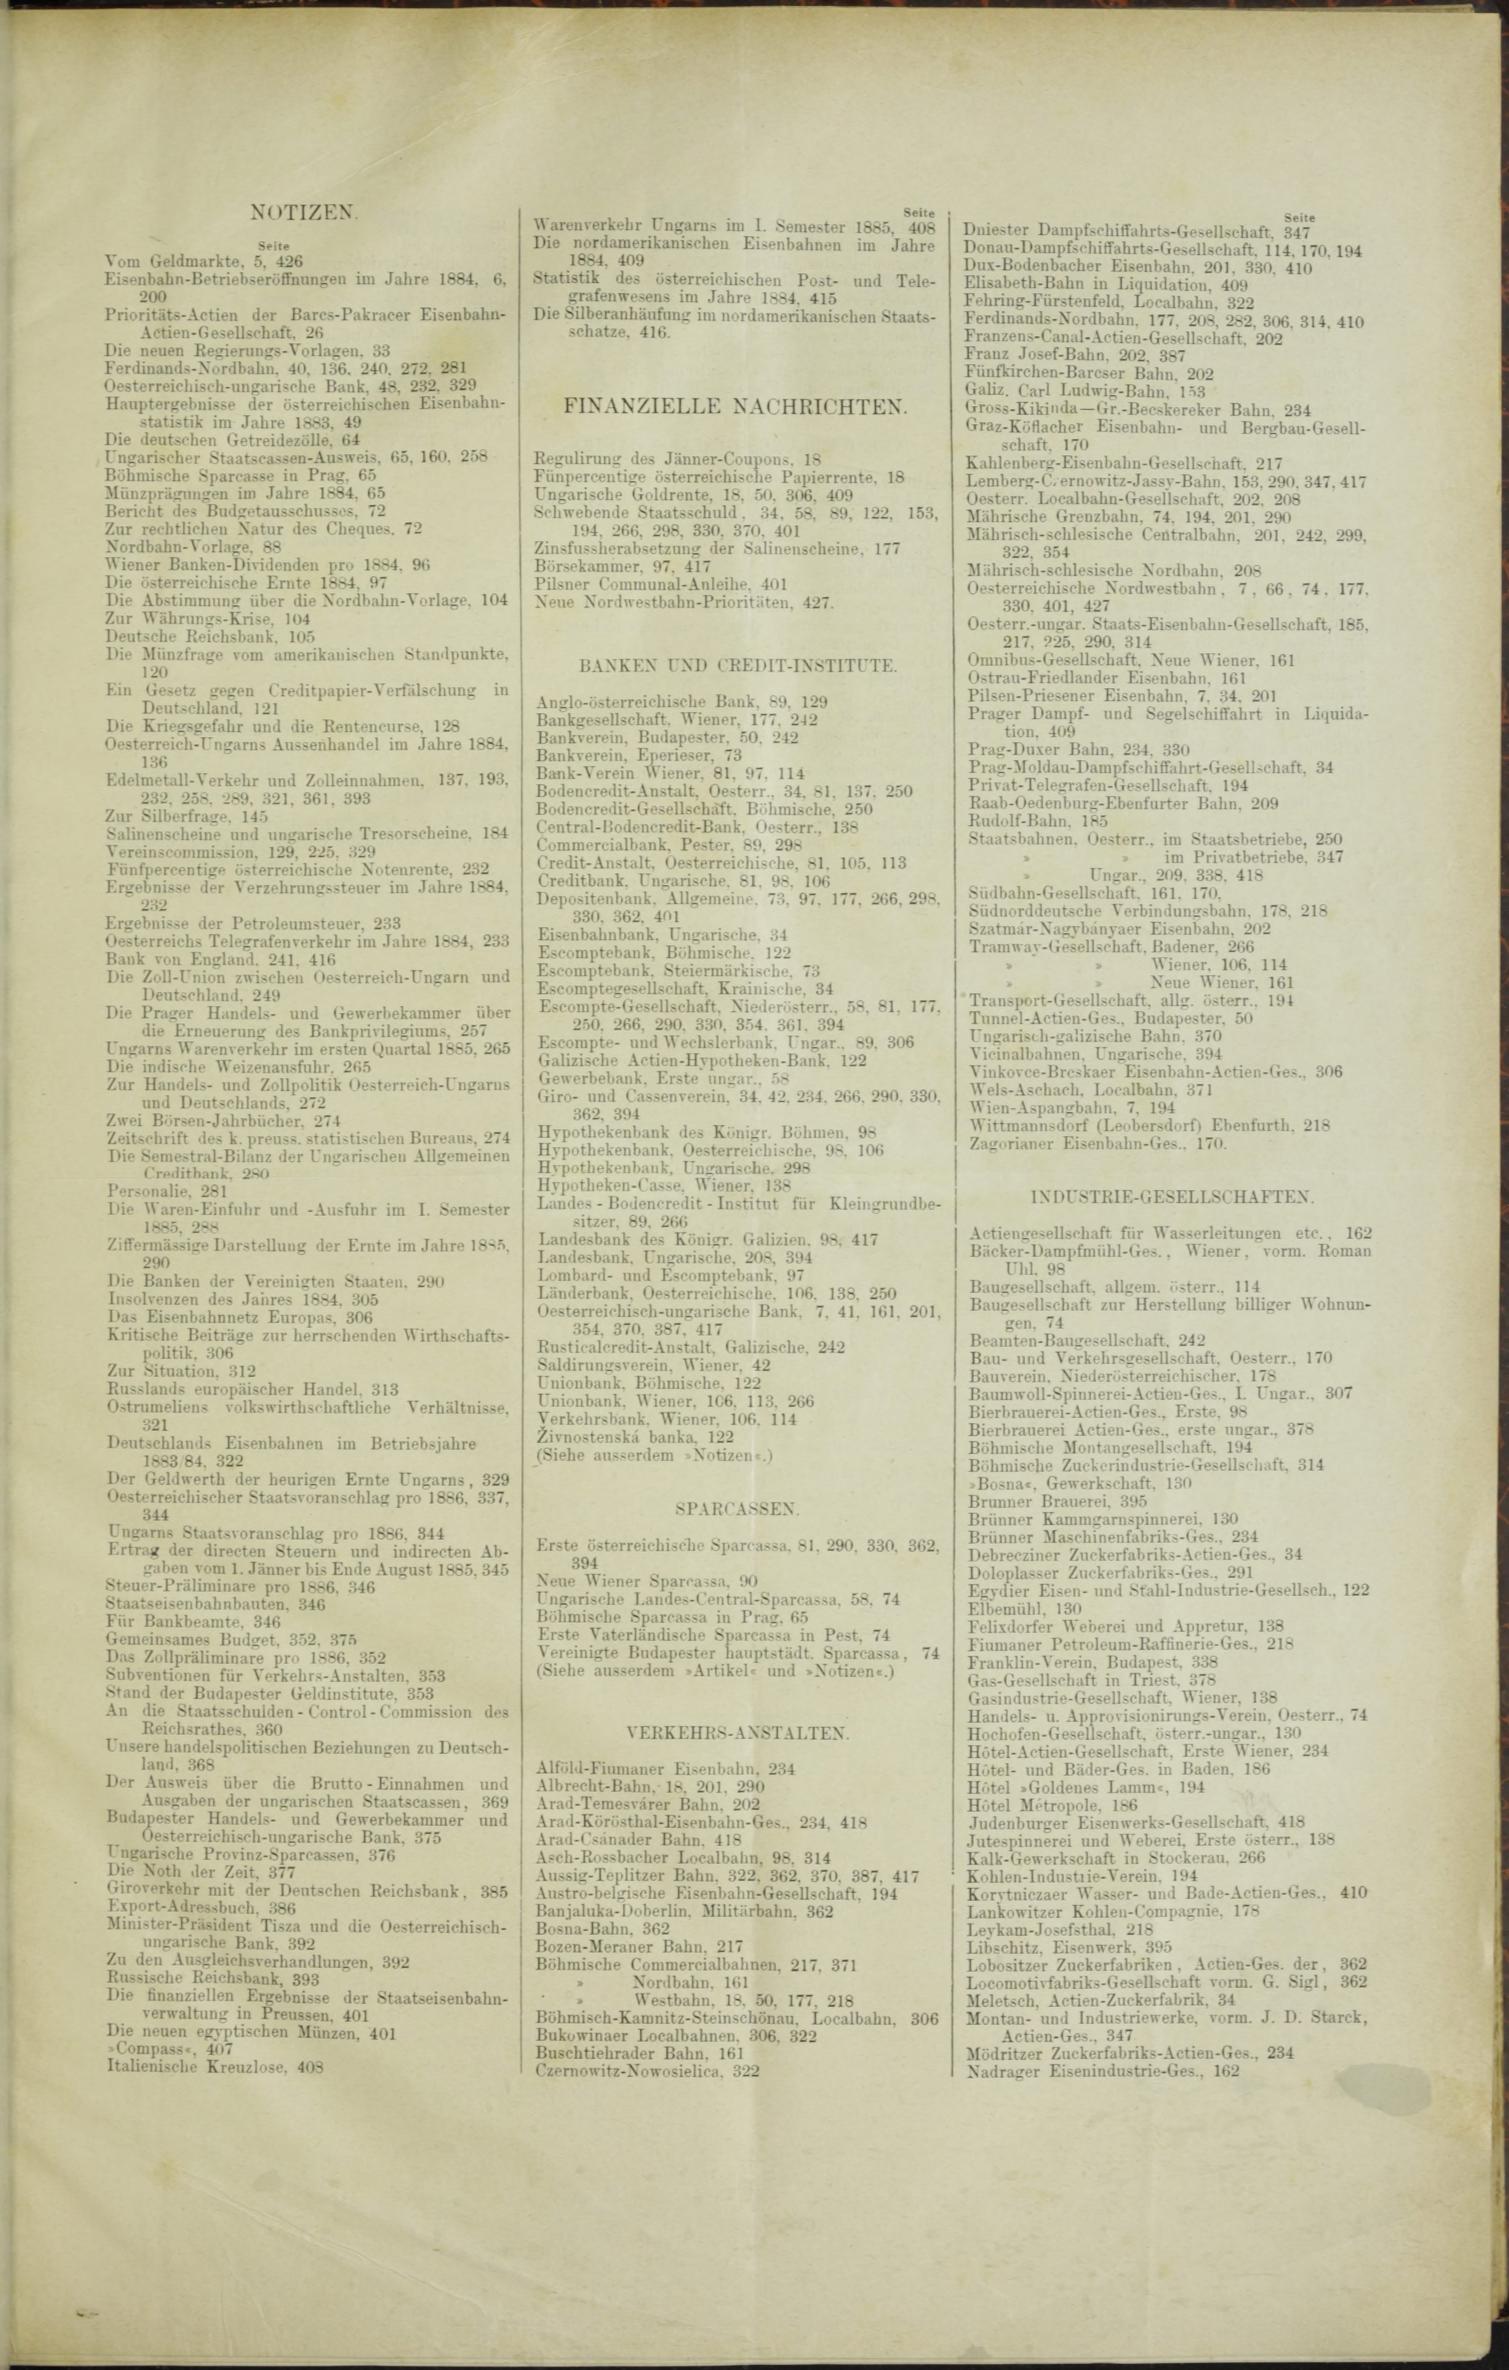 Der Tresor 24.12.1885 - Seite 11